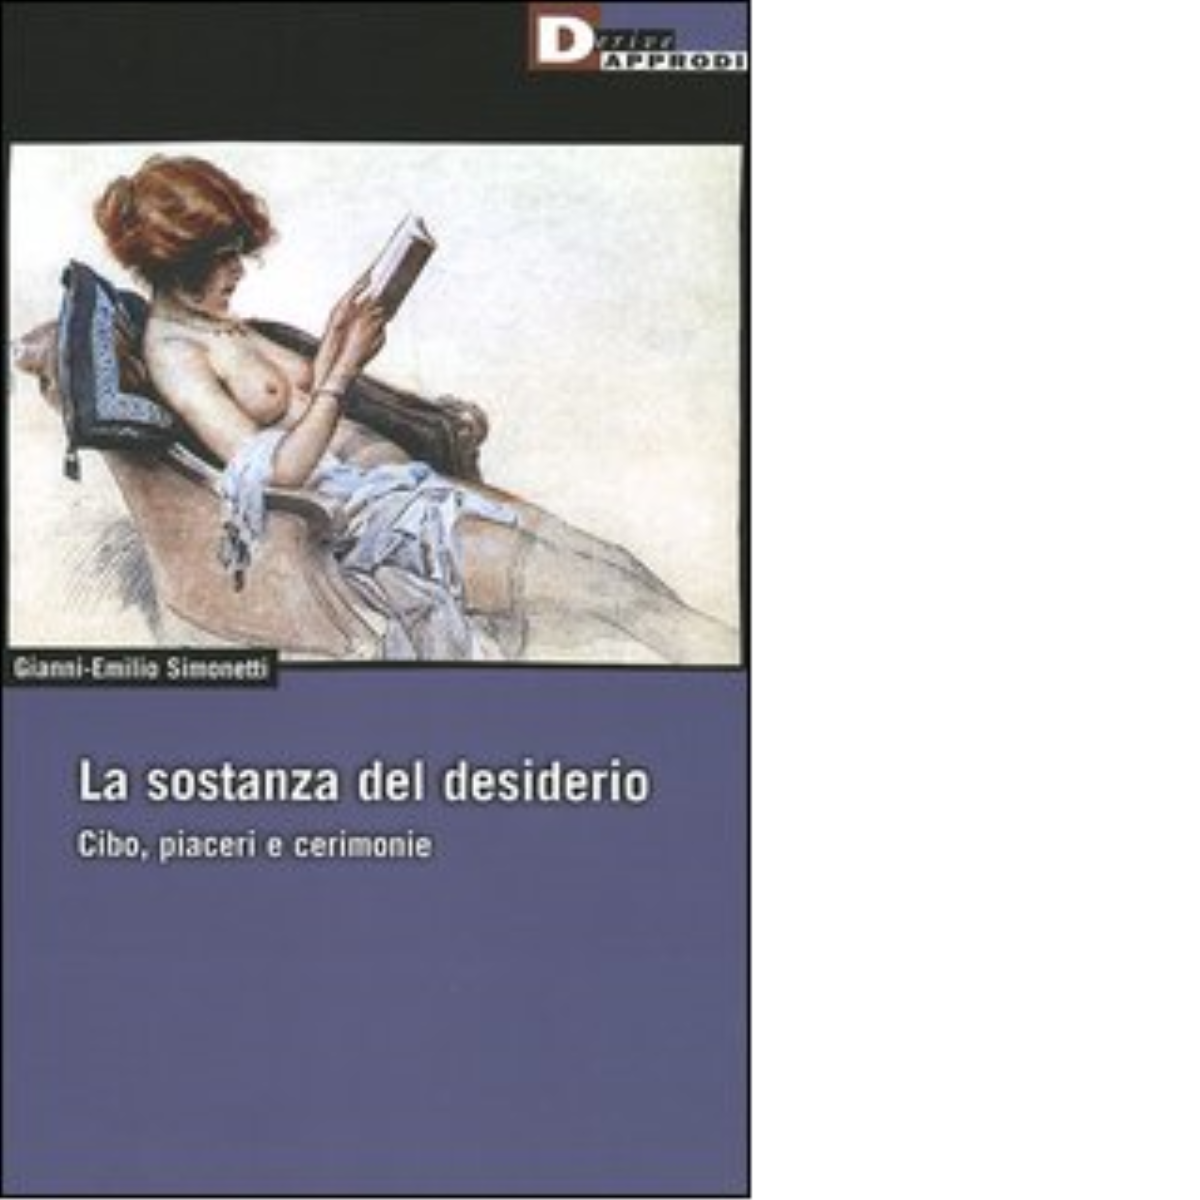 LA SOSTANZA DEL DESIDERIO. di GIANNI-EMILIO SIMONETTI - DeriveApprodi, 2005 libro usato